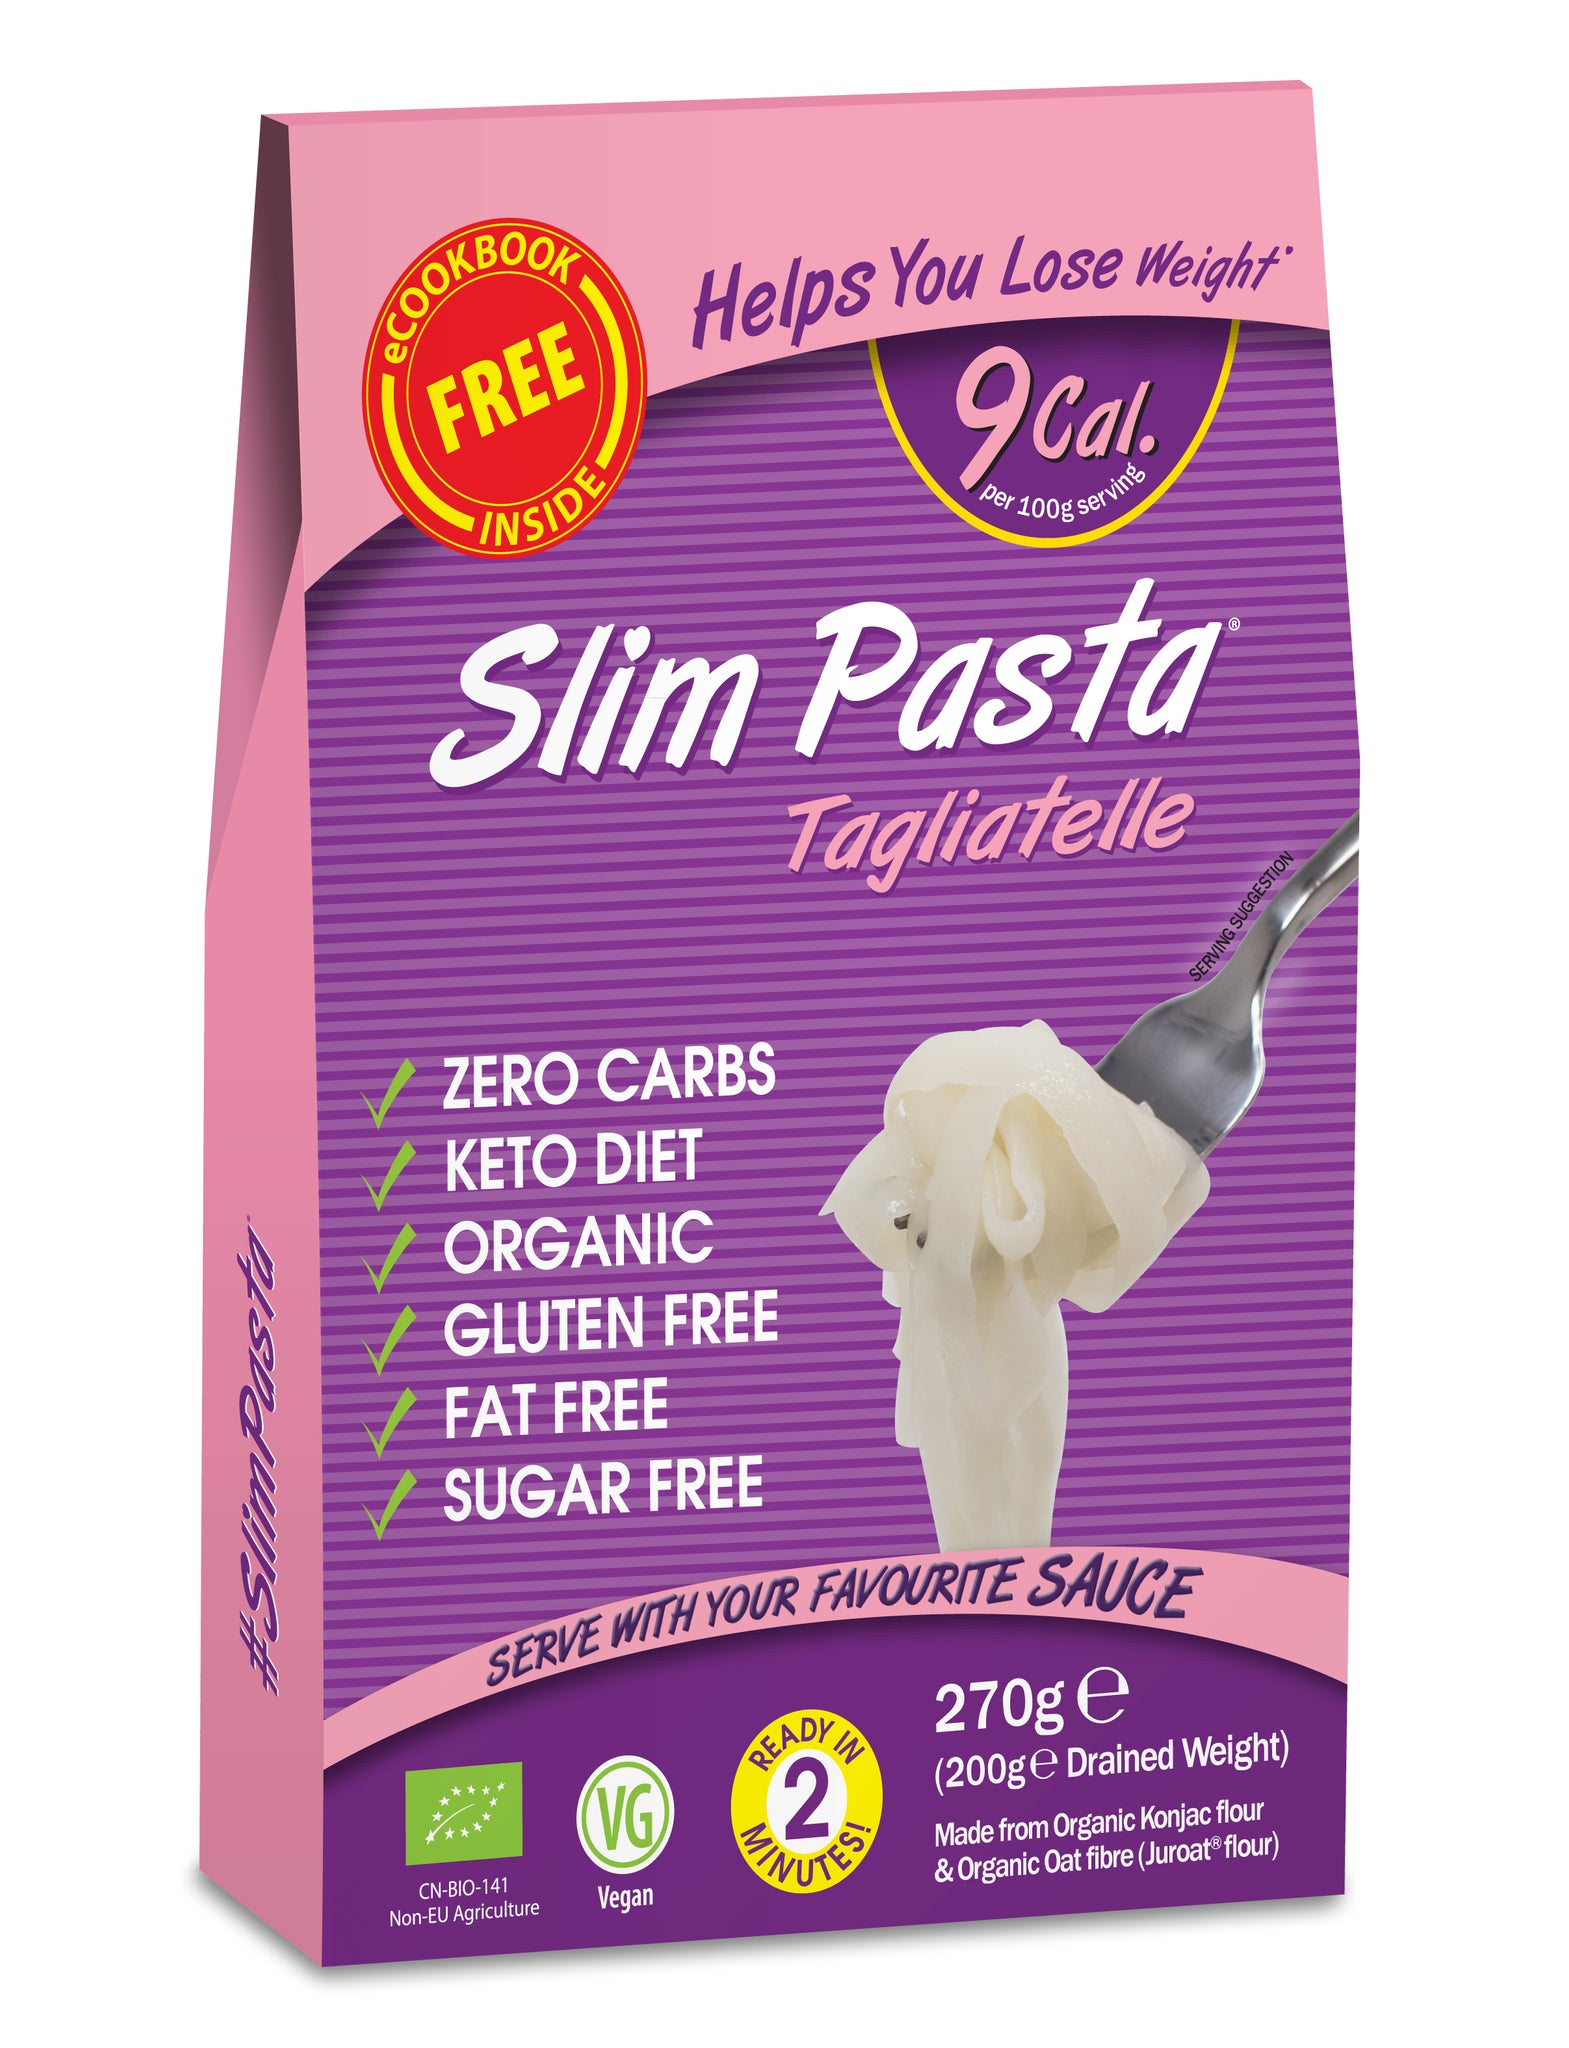 Slim Pasta Tagliatelle Original - Pack of 5